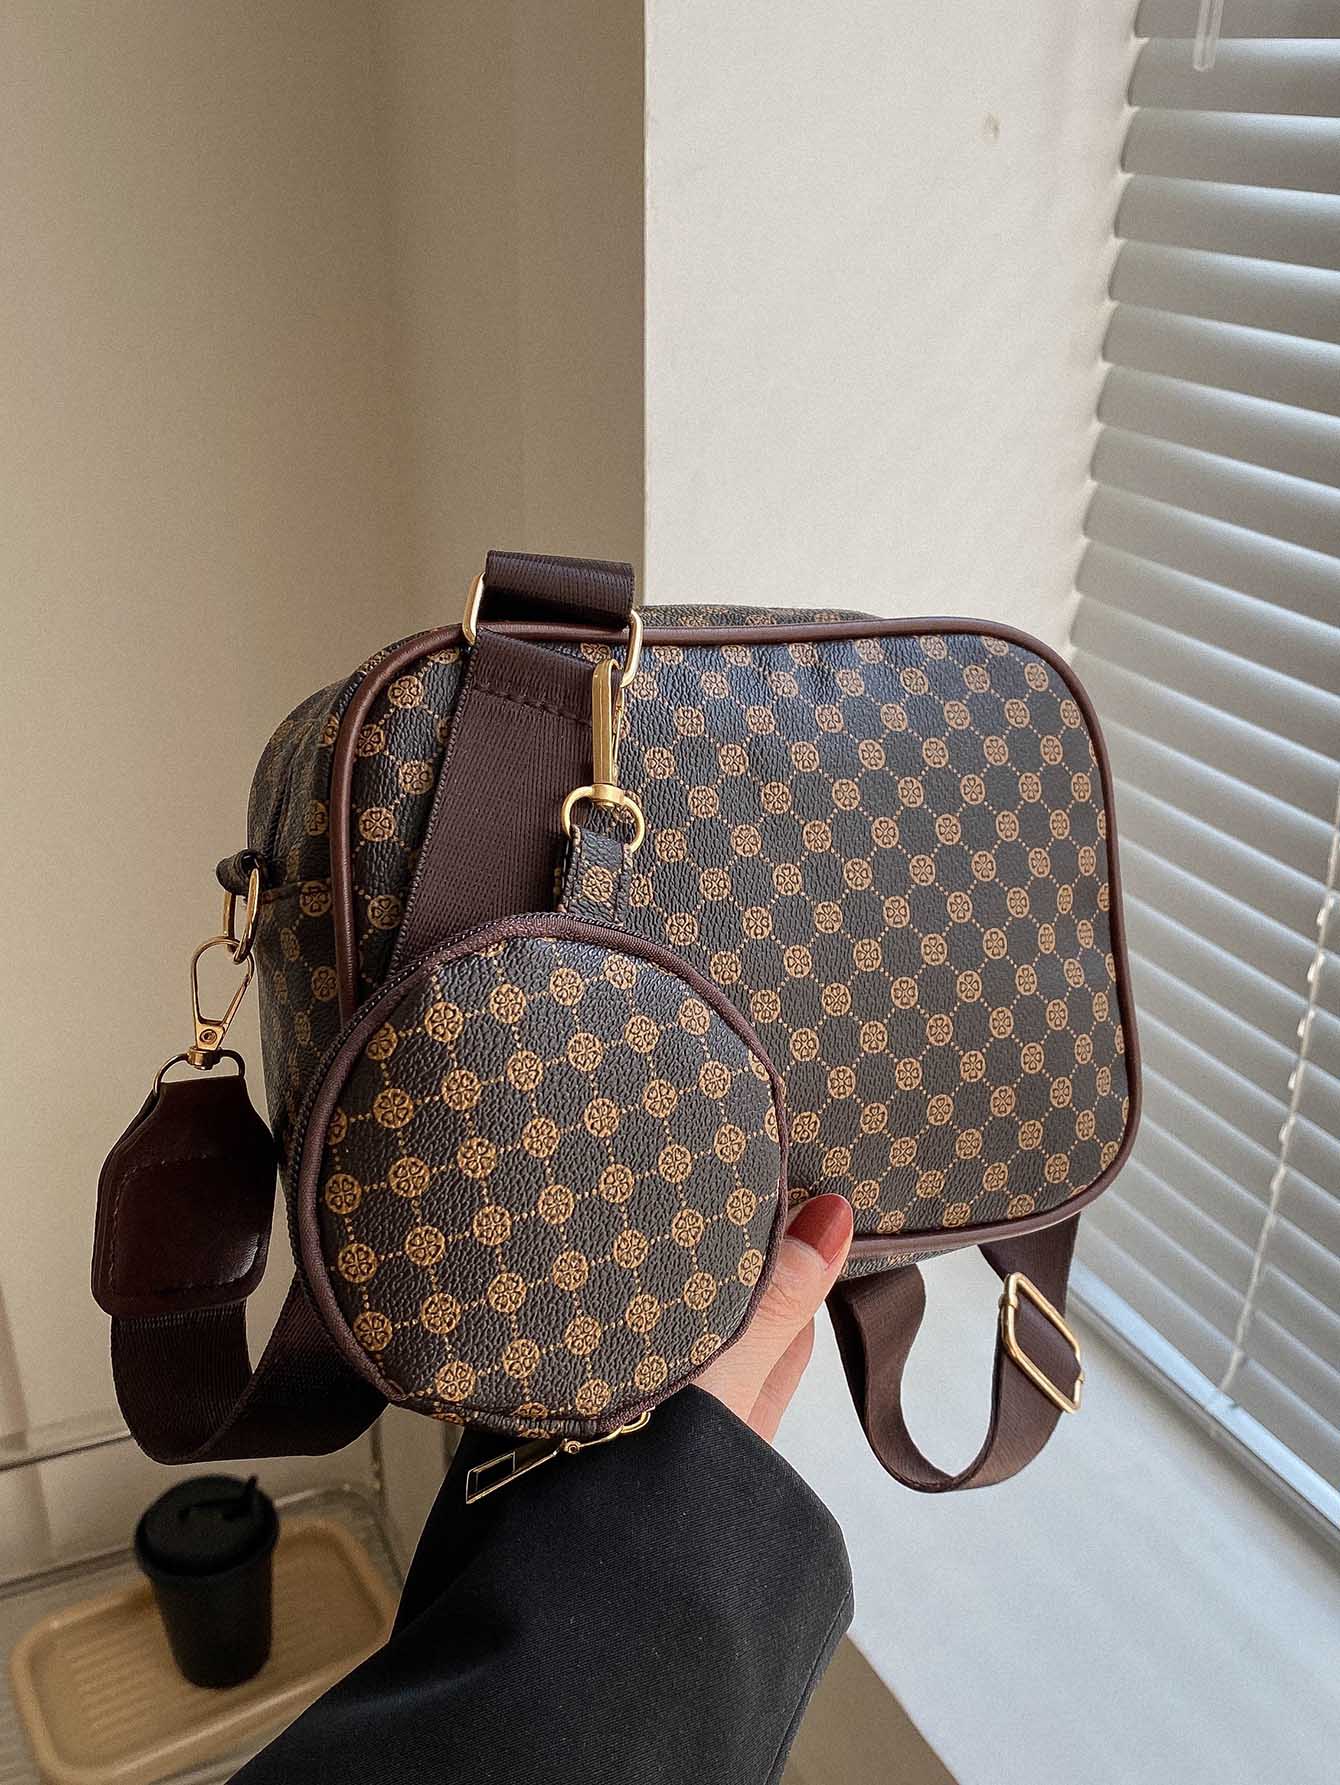 Мини-квадратная сумка с геометрическим узором и портмоне для монет Квадратная сумка в стиле ретро, кофейный коричневый